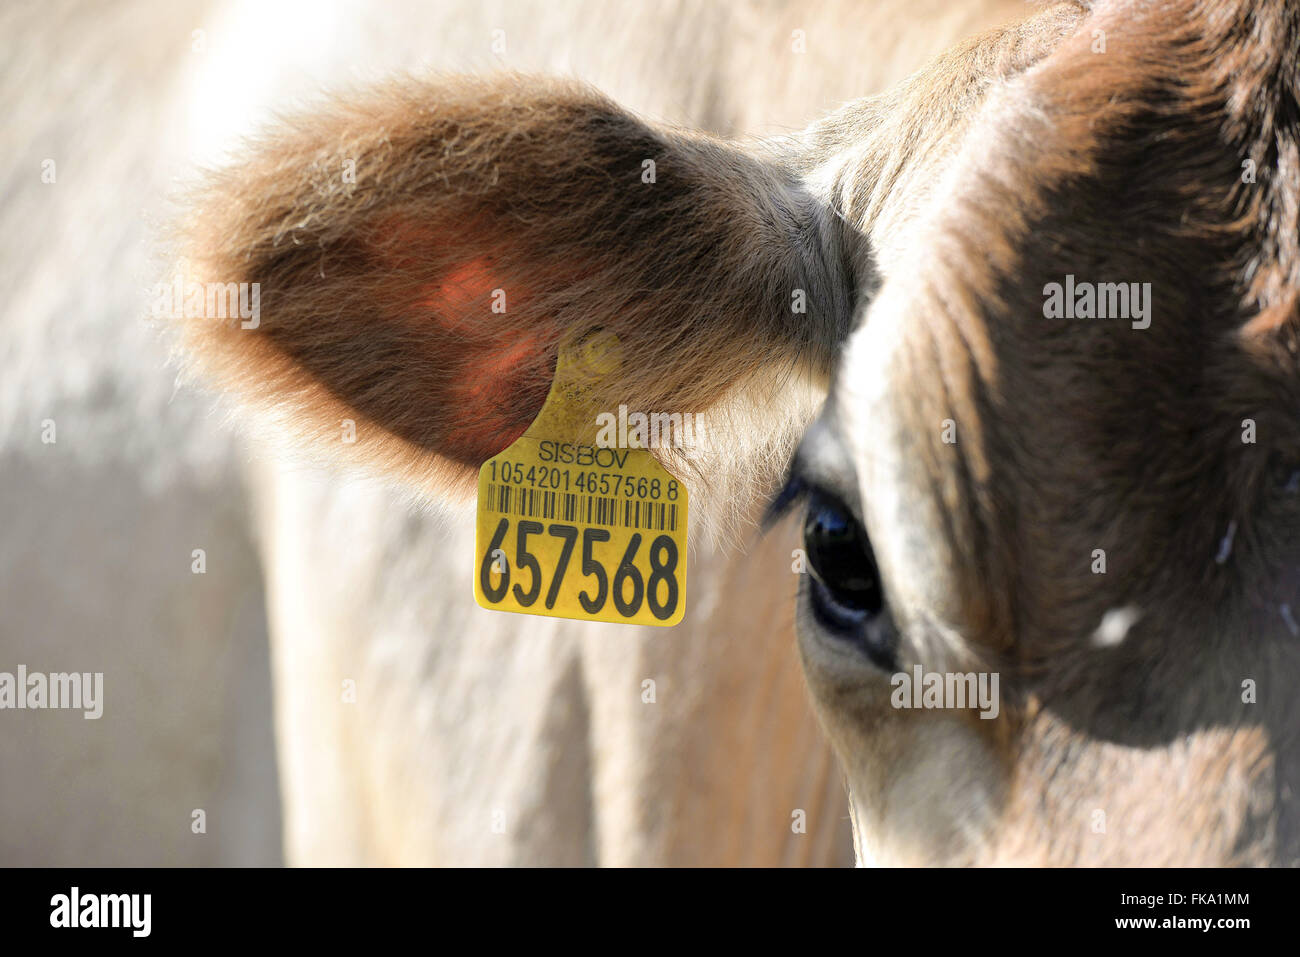 Detalhe de brinco de identificaÁ„o em vaca por cÛdigo de barras Stock Photo  - Alamy